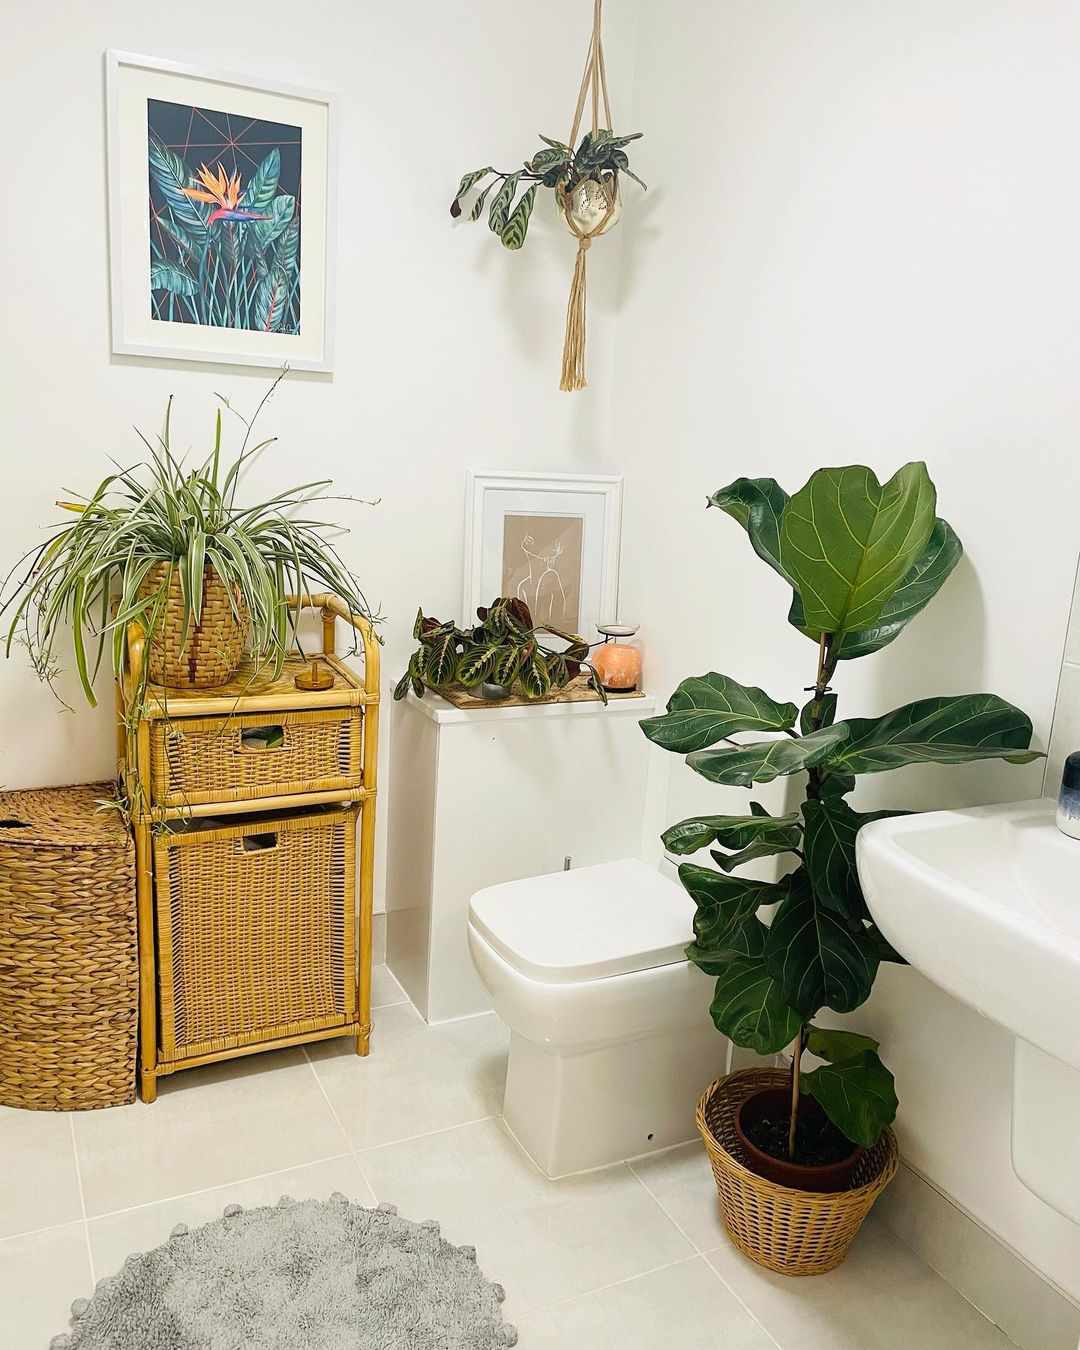 Không chỉ giới hạn ở không gian phòng tắm, cả khu vực nhà vệ sinh cũng có thể tận dụng để trưng bày cây cảnh. Những loại cây như nha đam, lưỡi hổ, dây nhện, bạc hà,... có thể “một công đôi việc” là khử mùi hôi và trang trí toilet.